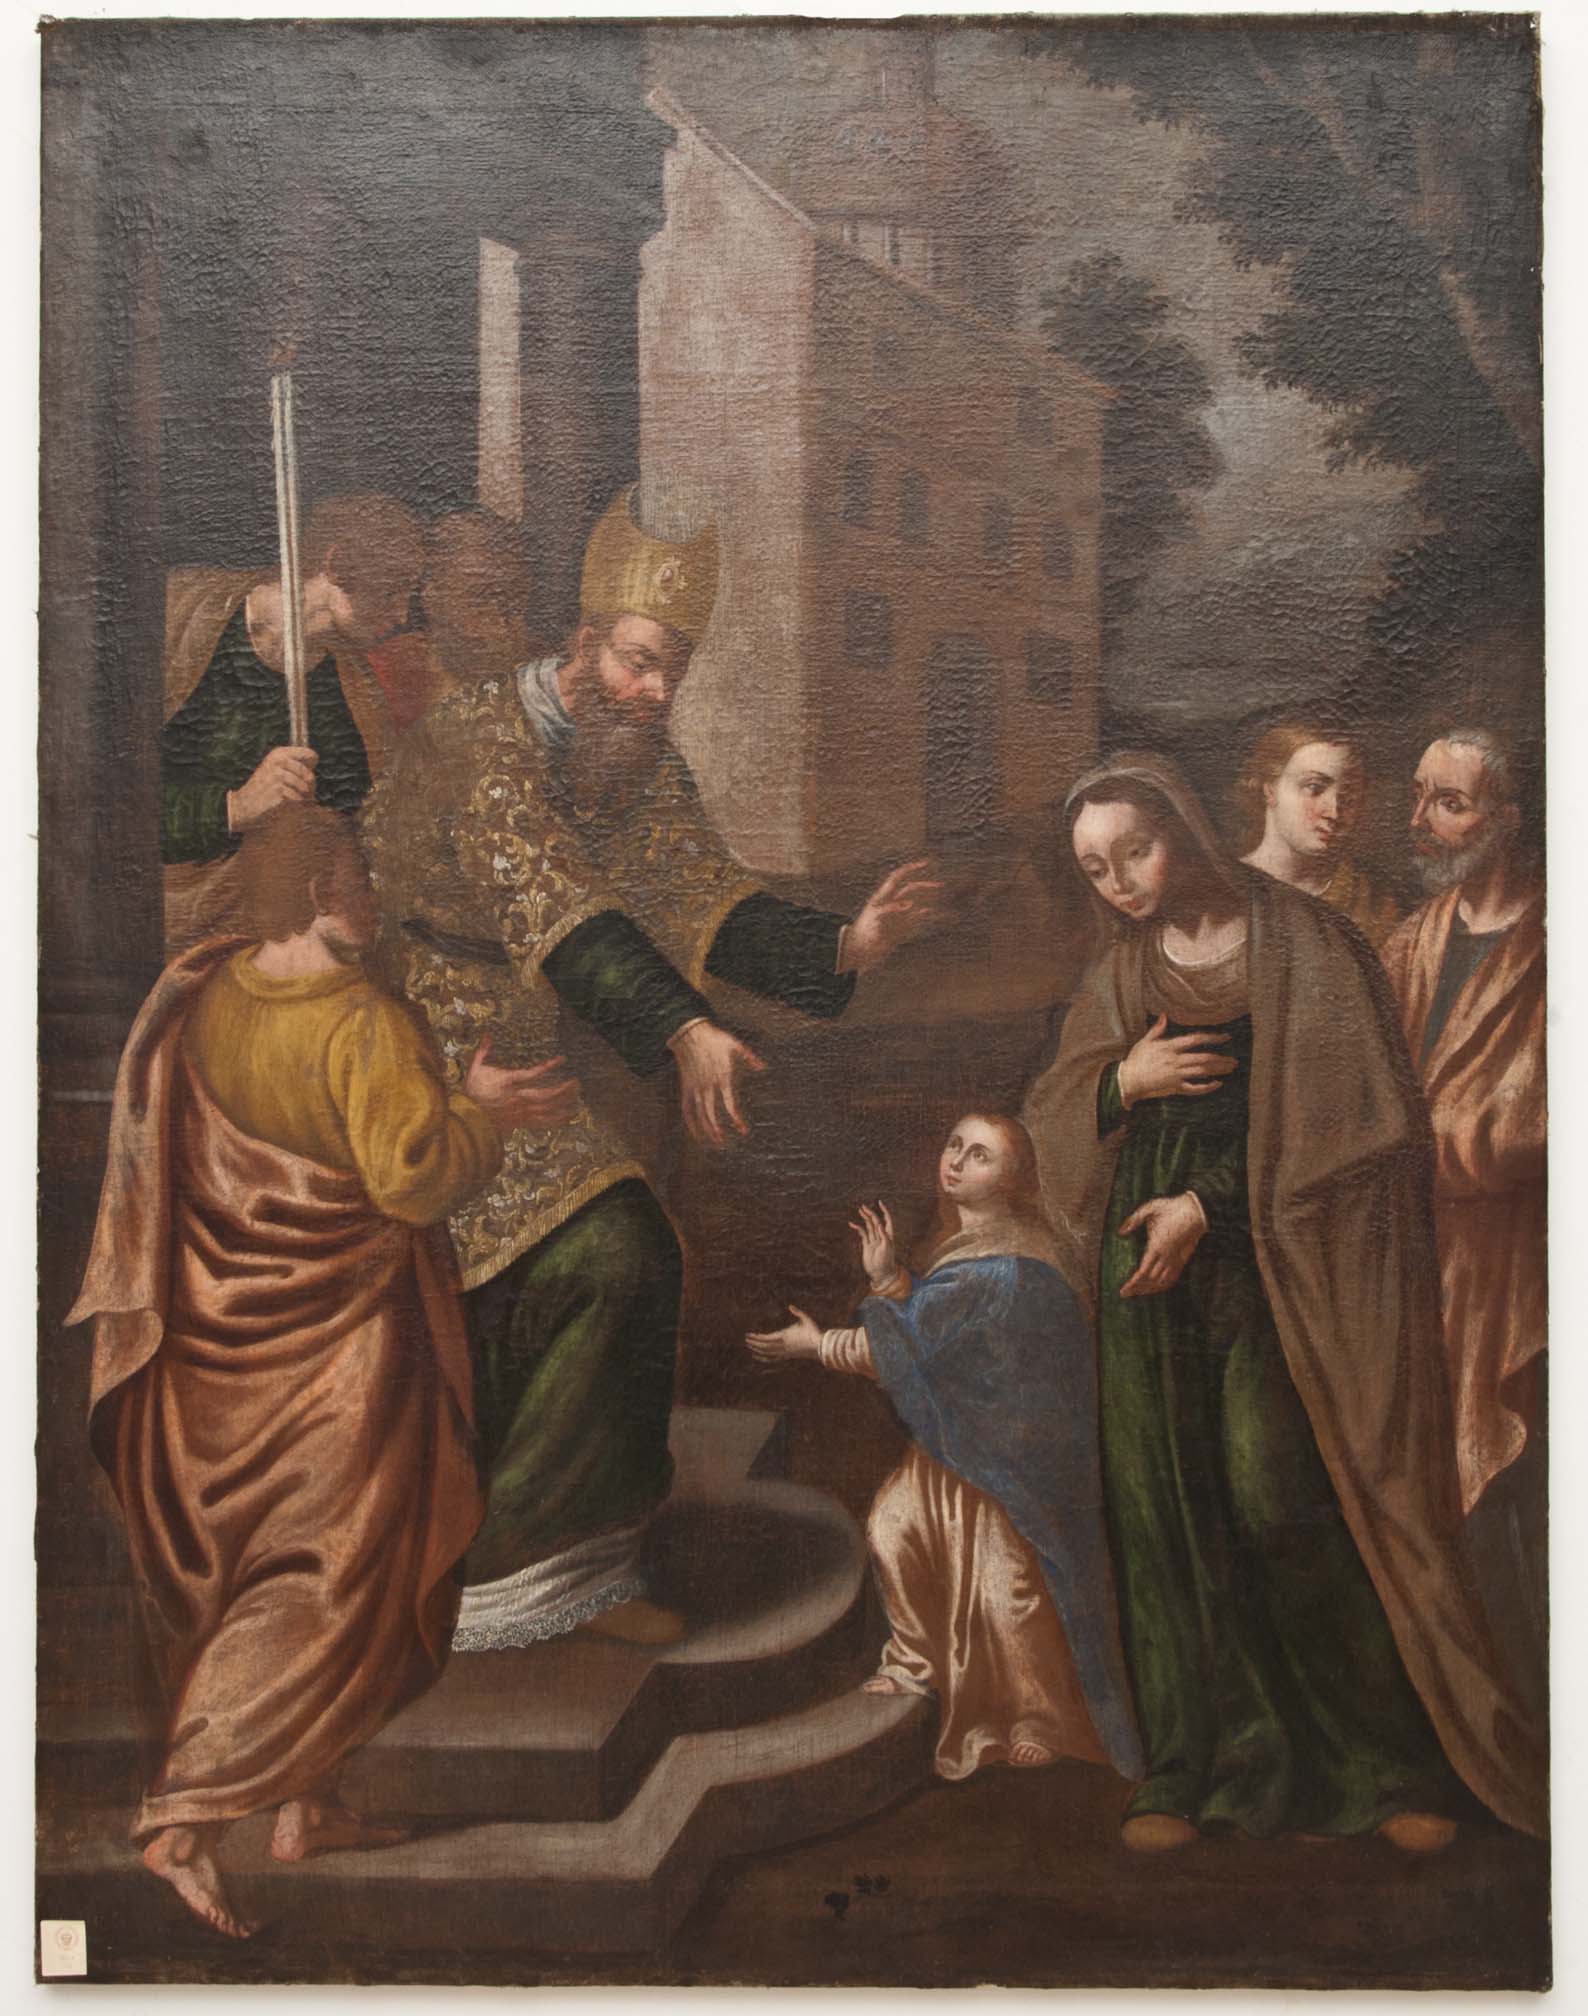 PRESENTAZIONE DI MARIA AL TEMPIO (dipinto - dipinto su tela, opera isolata) di Ignoto (maniera) - ambito Italia meridionale (XVIII)